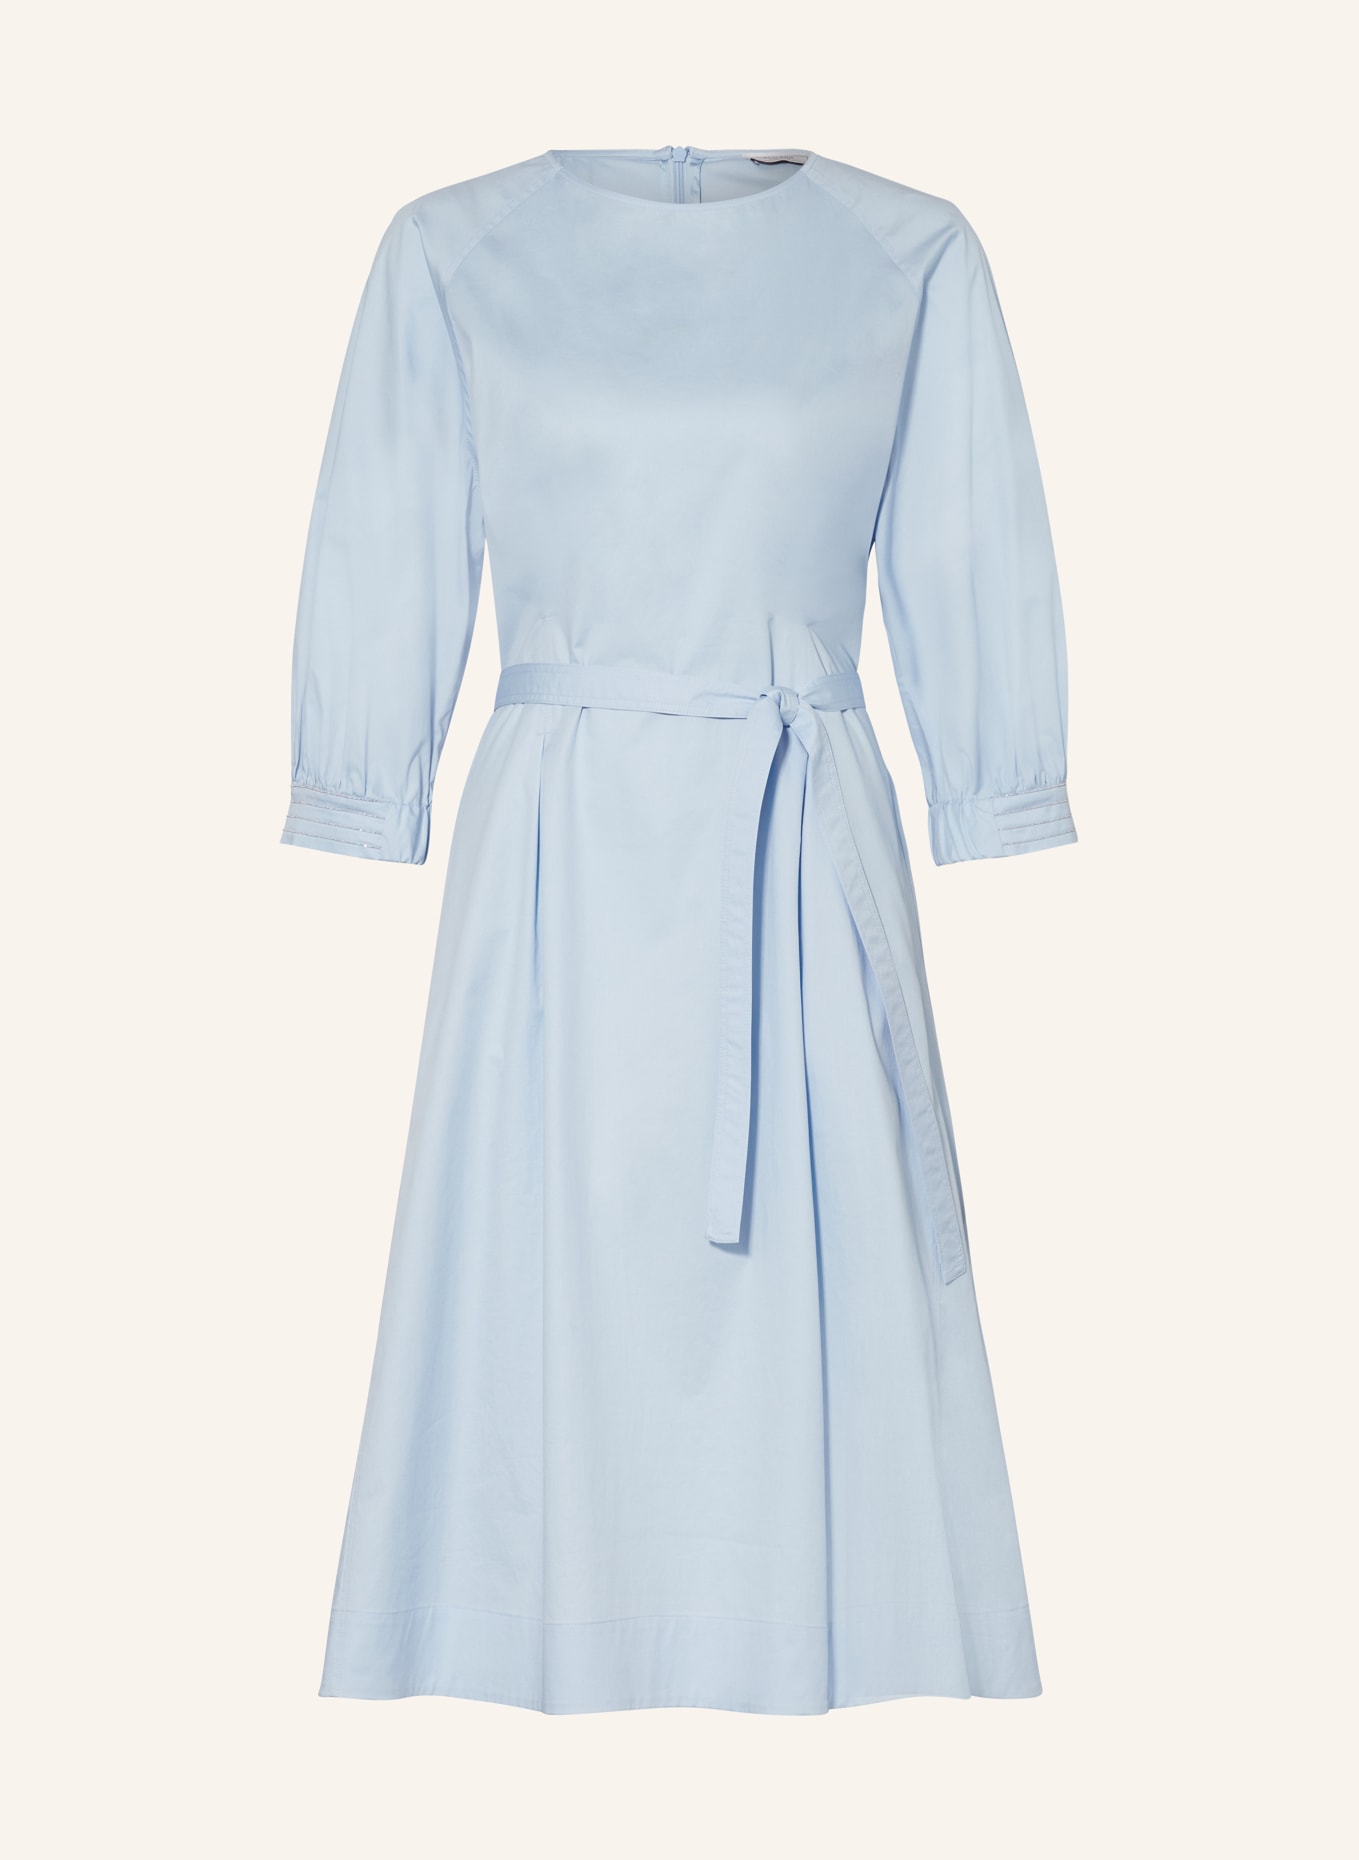 PESERICO Kleid mit 3/4-Arm und Schmuckperlen, Farbe: HELLBLAU (Bild 1)